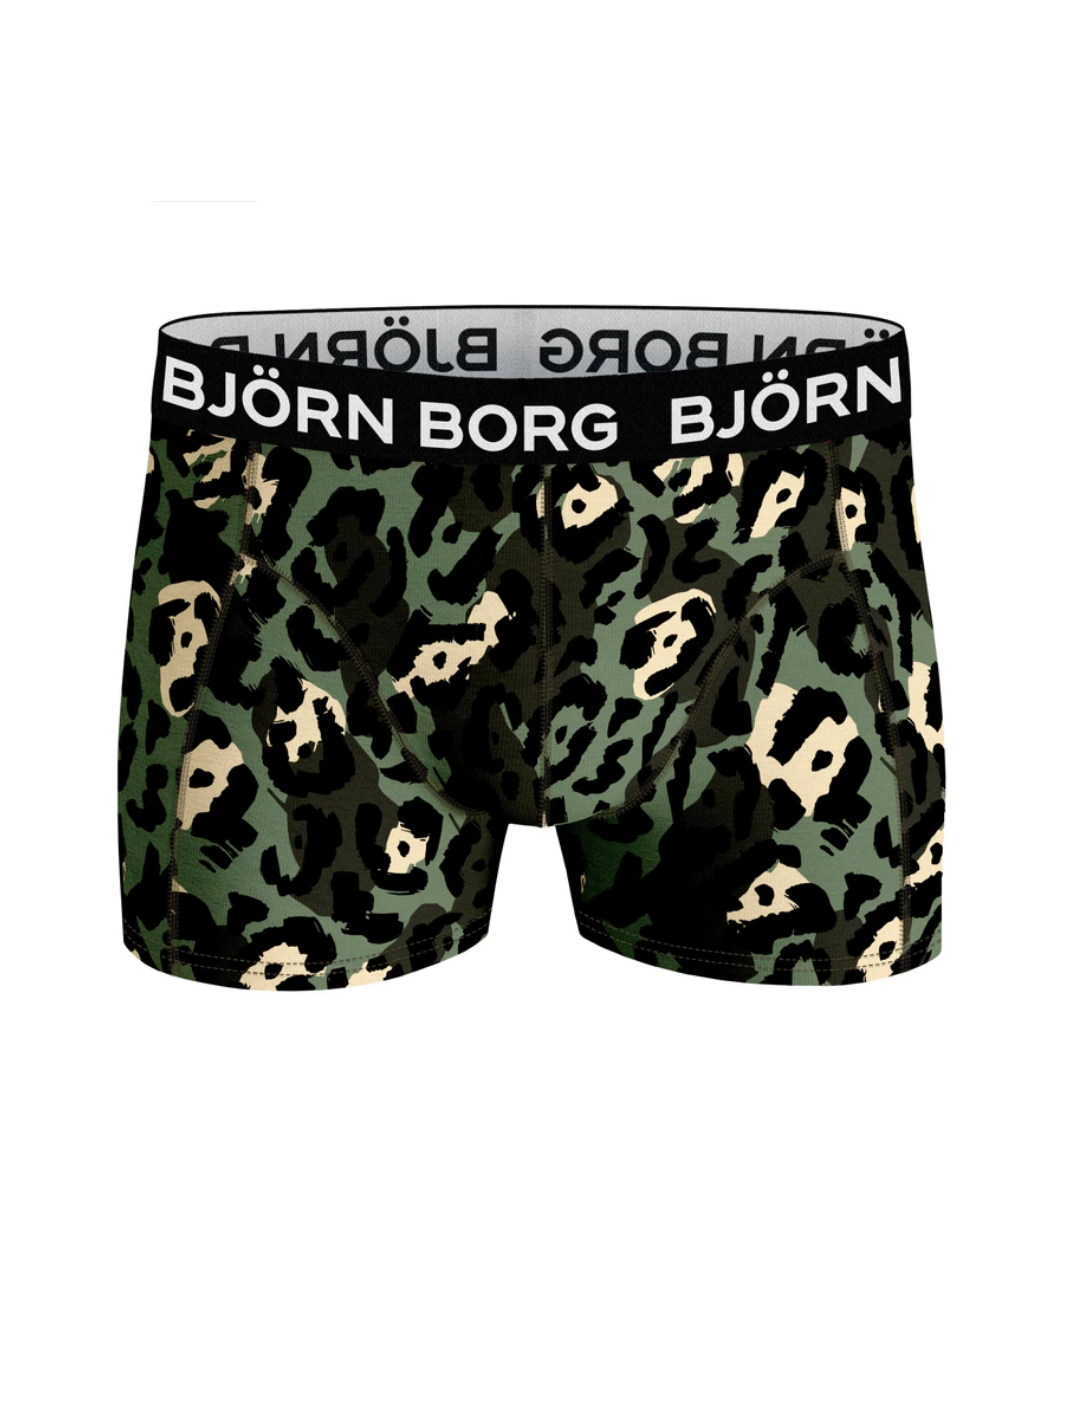 5-pack Björn Borg Sammy Boxer Shorts